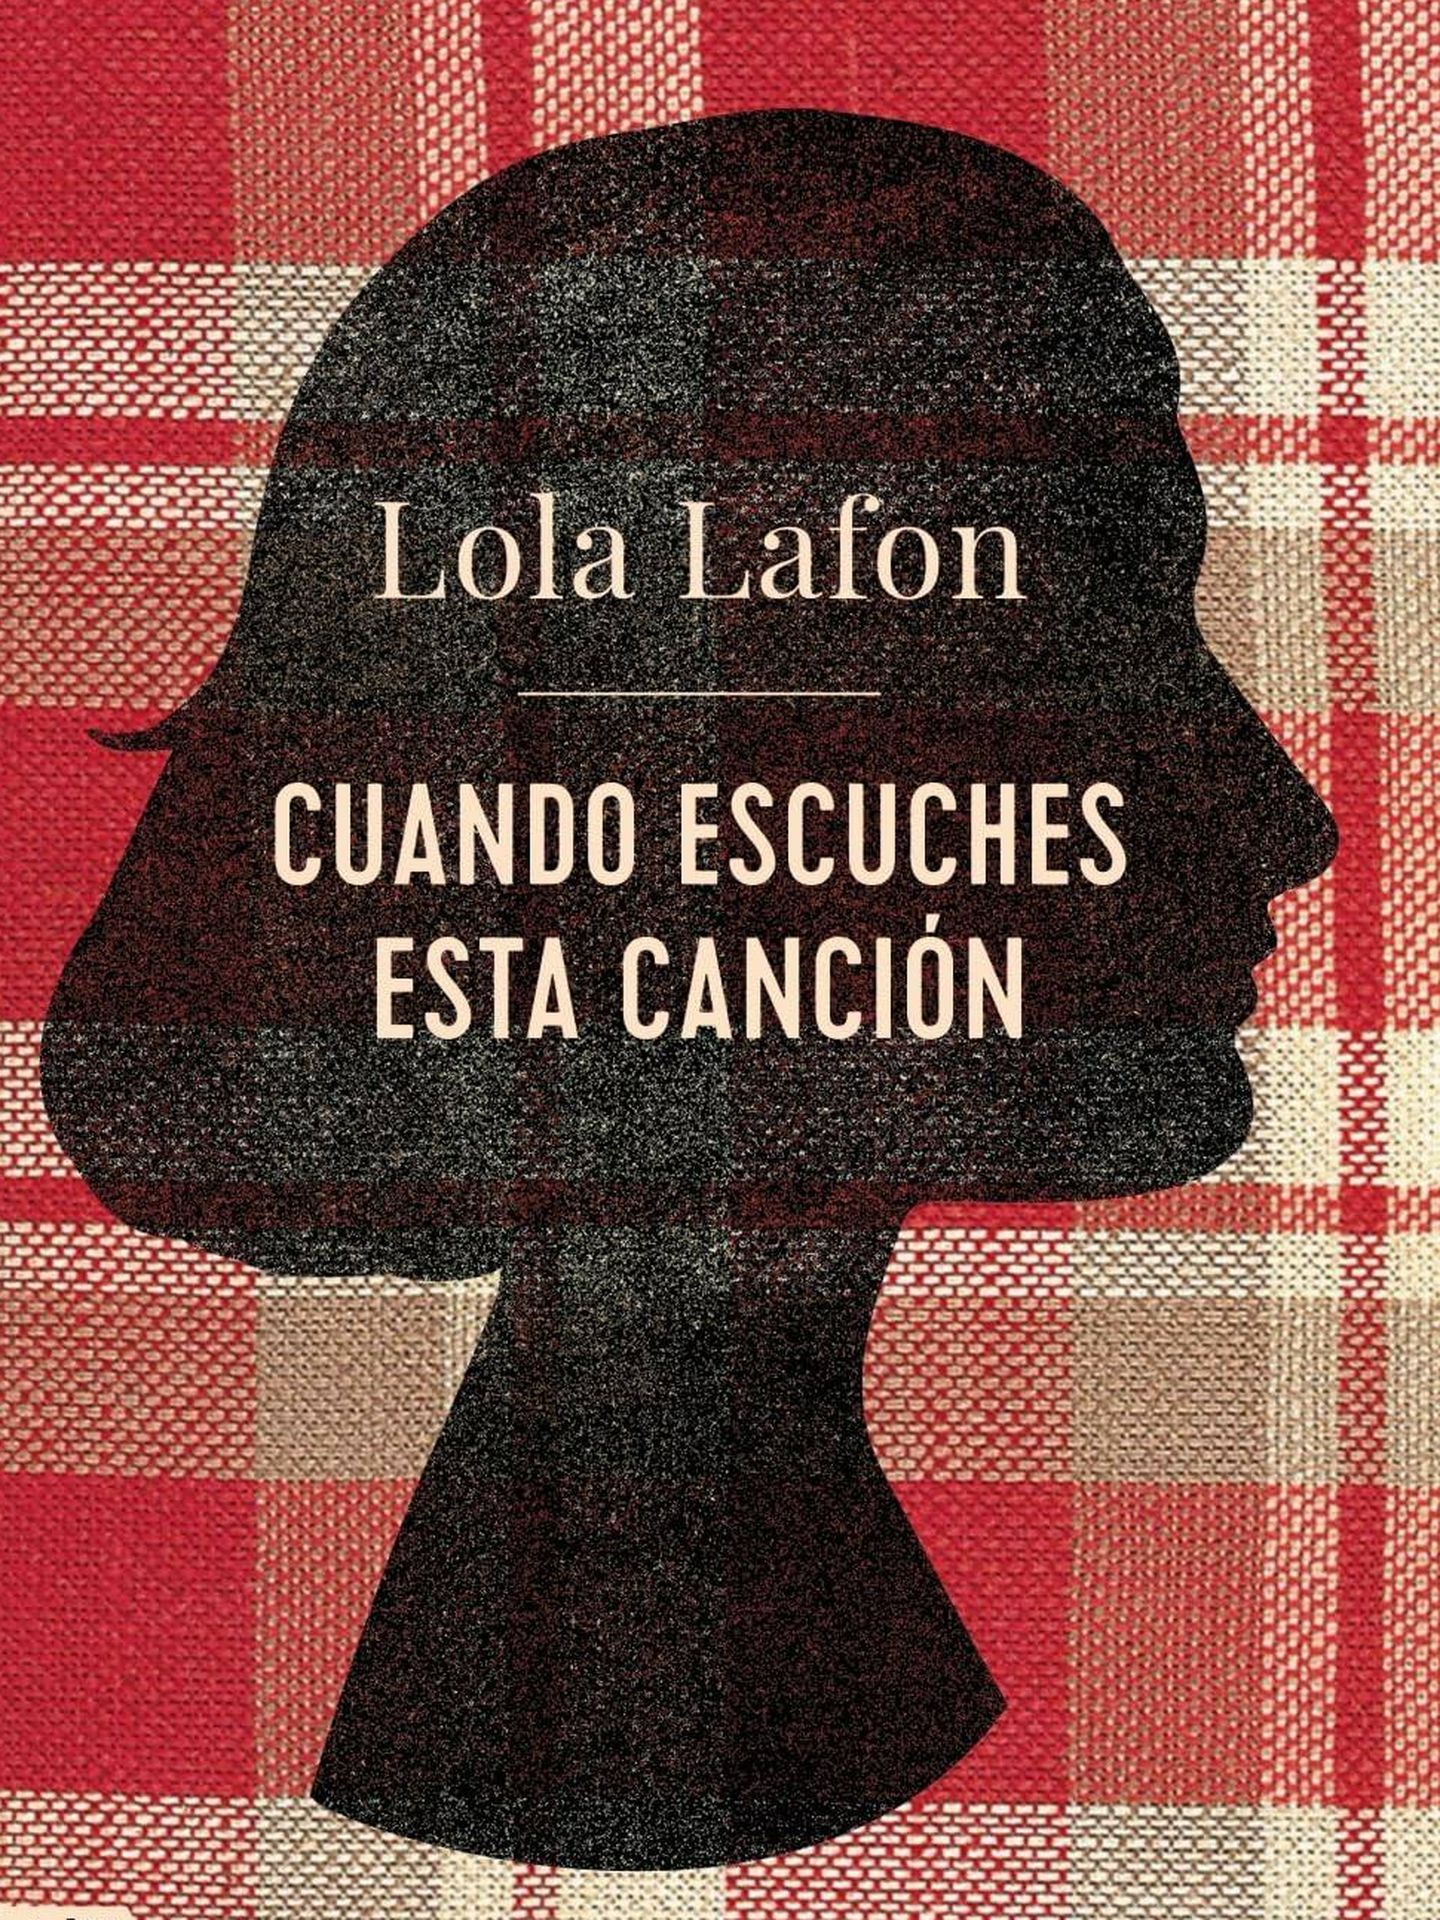 'Cuando escuches esta canción', de Lola Lafon.